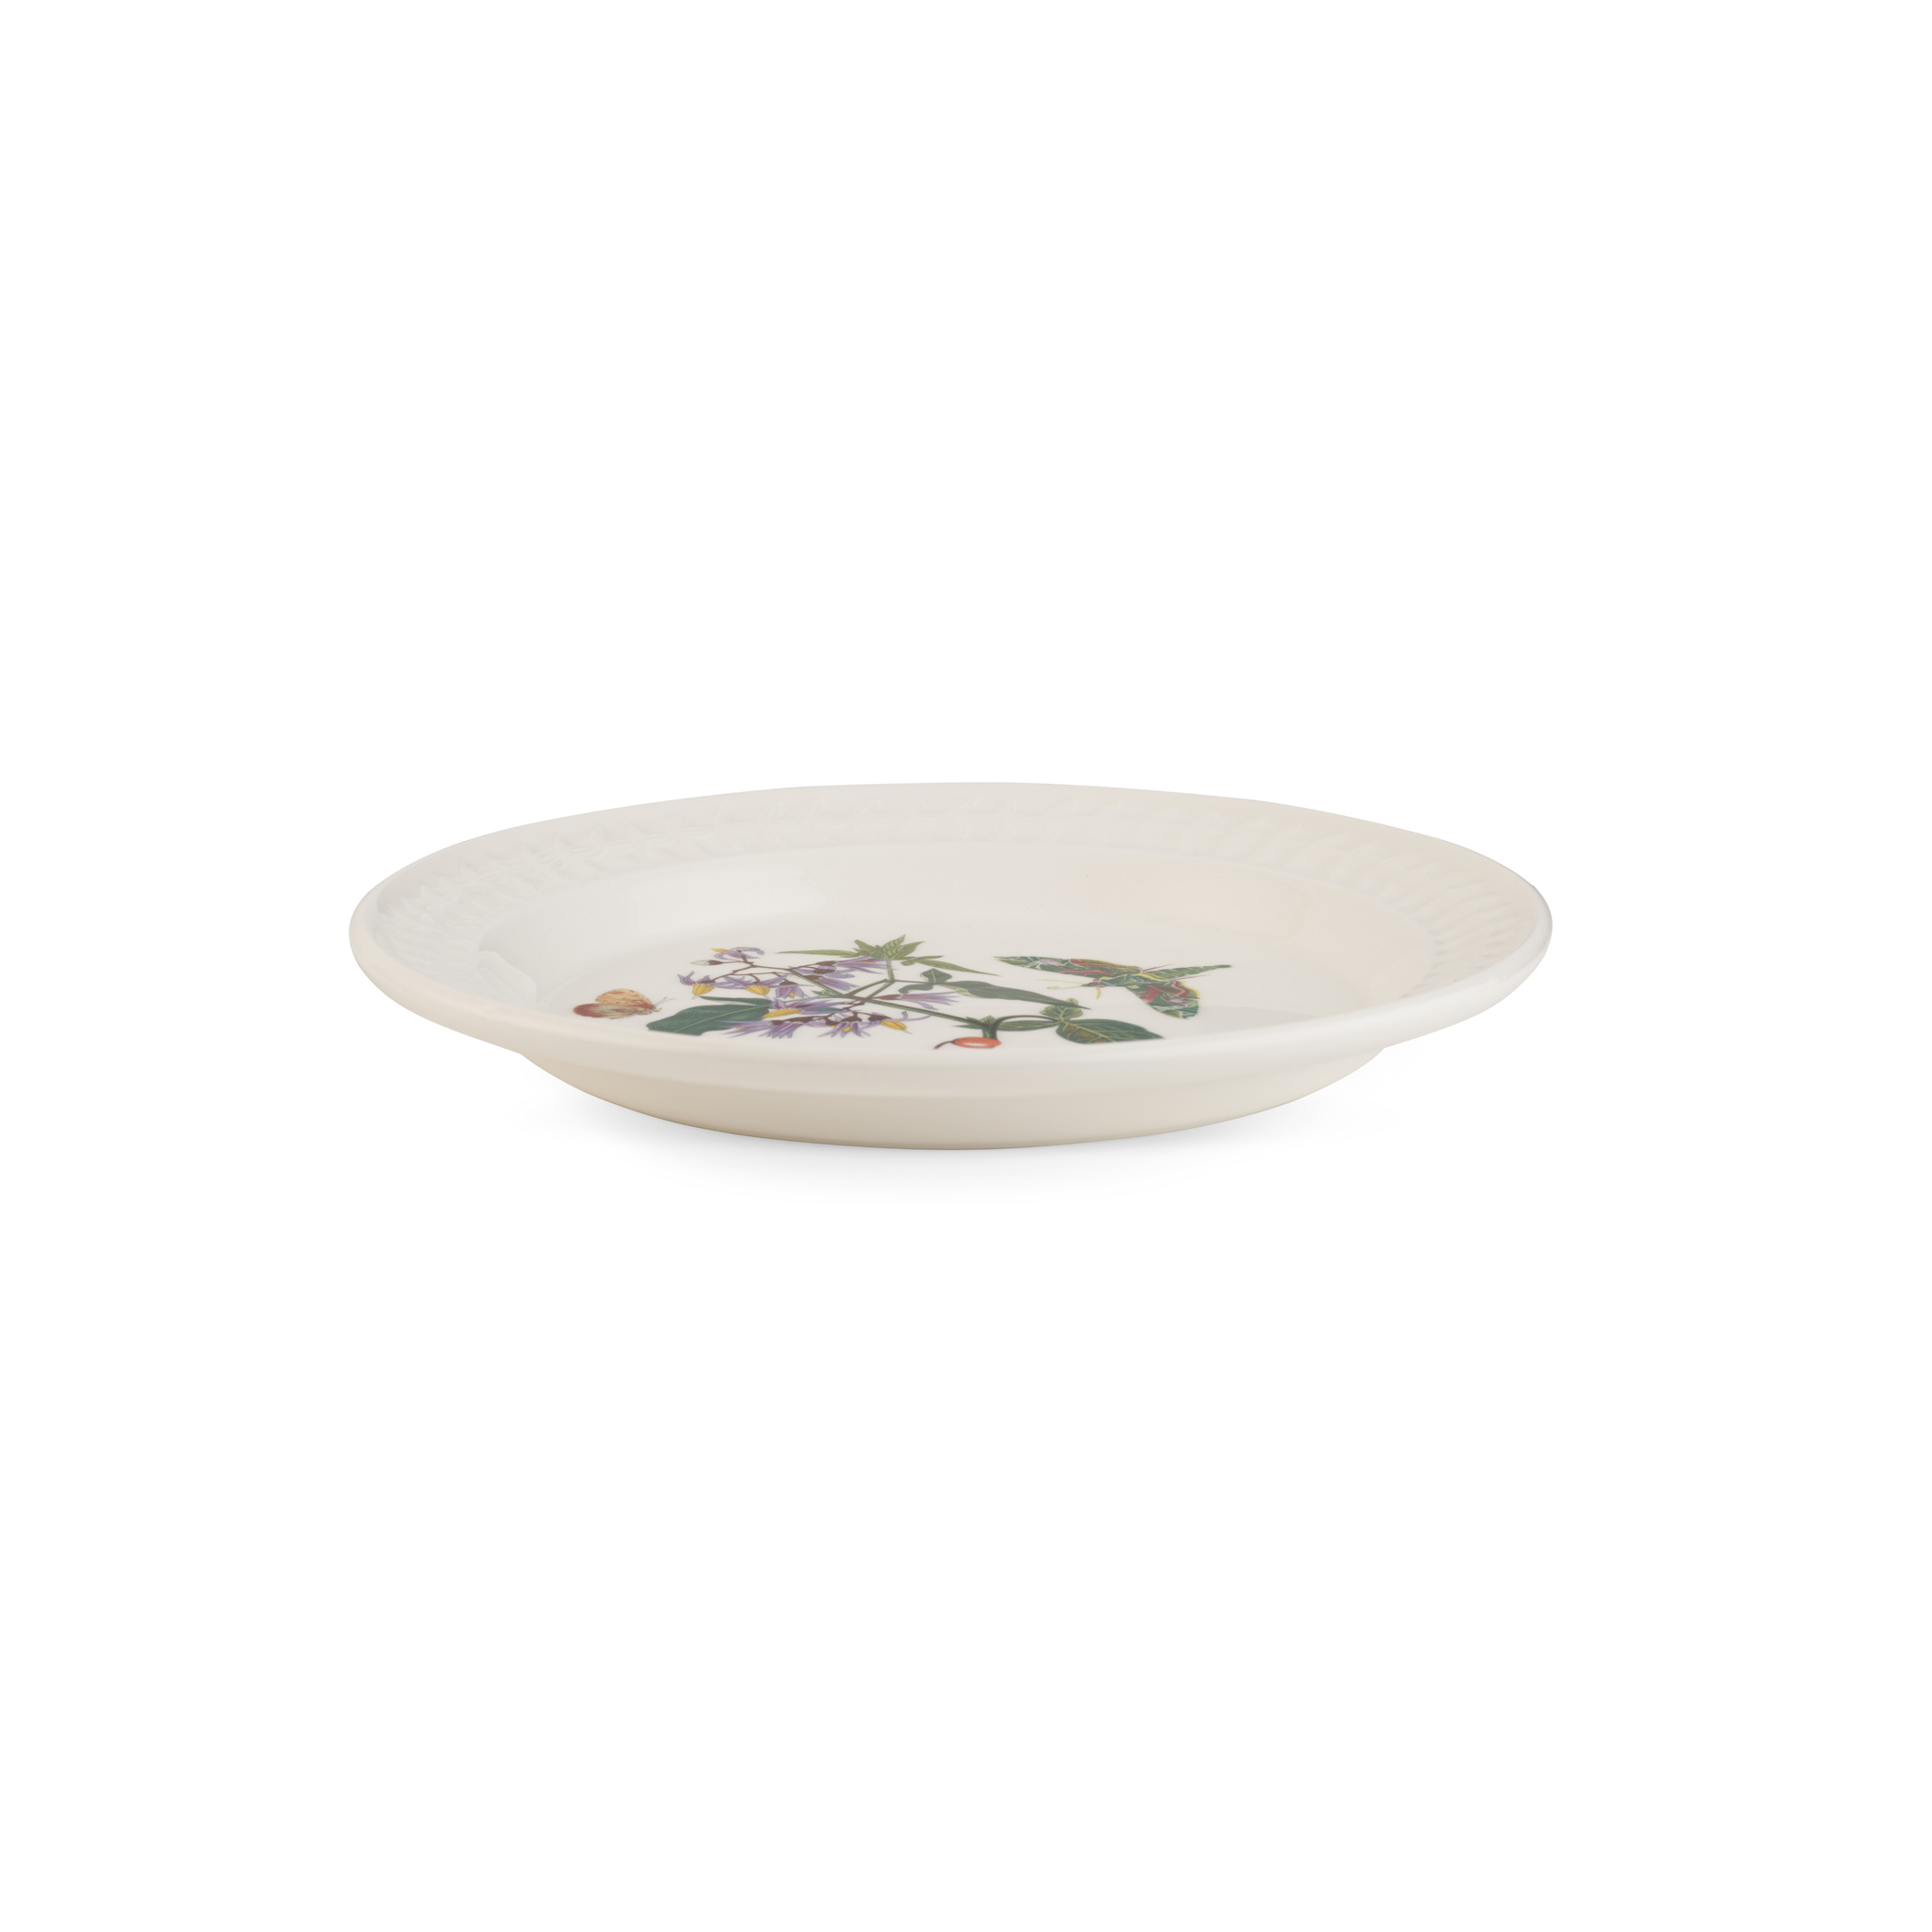 Portmeirion Botanic Garden Set Of 4 Porcelain Measuring Spoons, Dishwasher  And Microwave Safe - Assorted Floral Motifs : Target